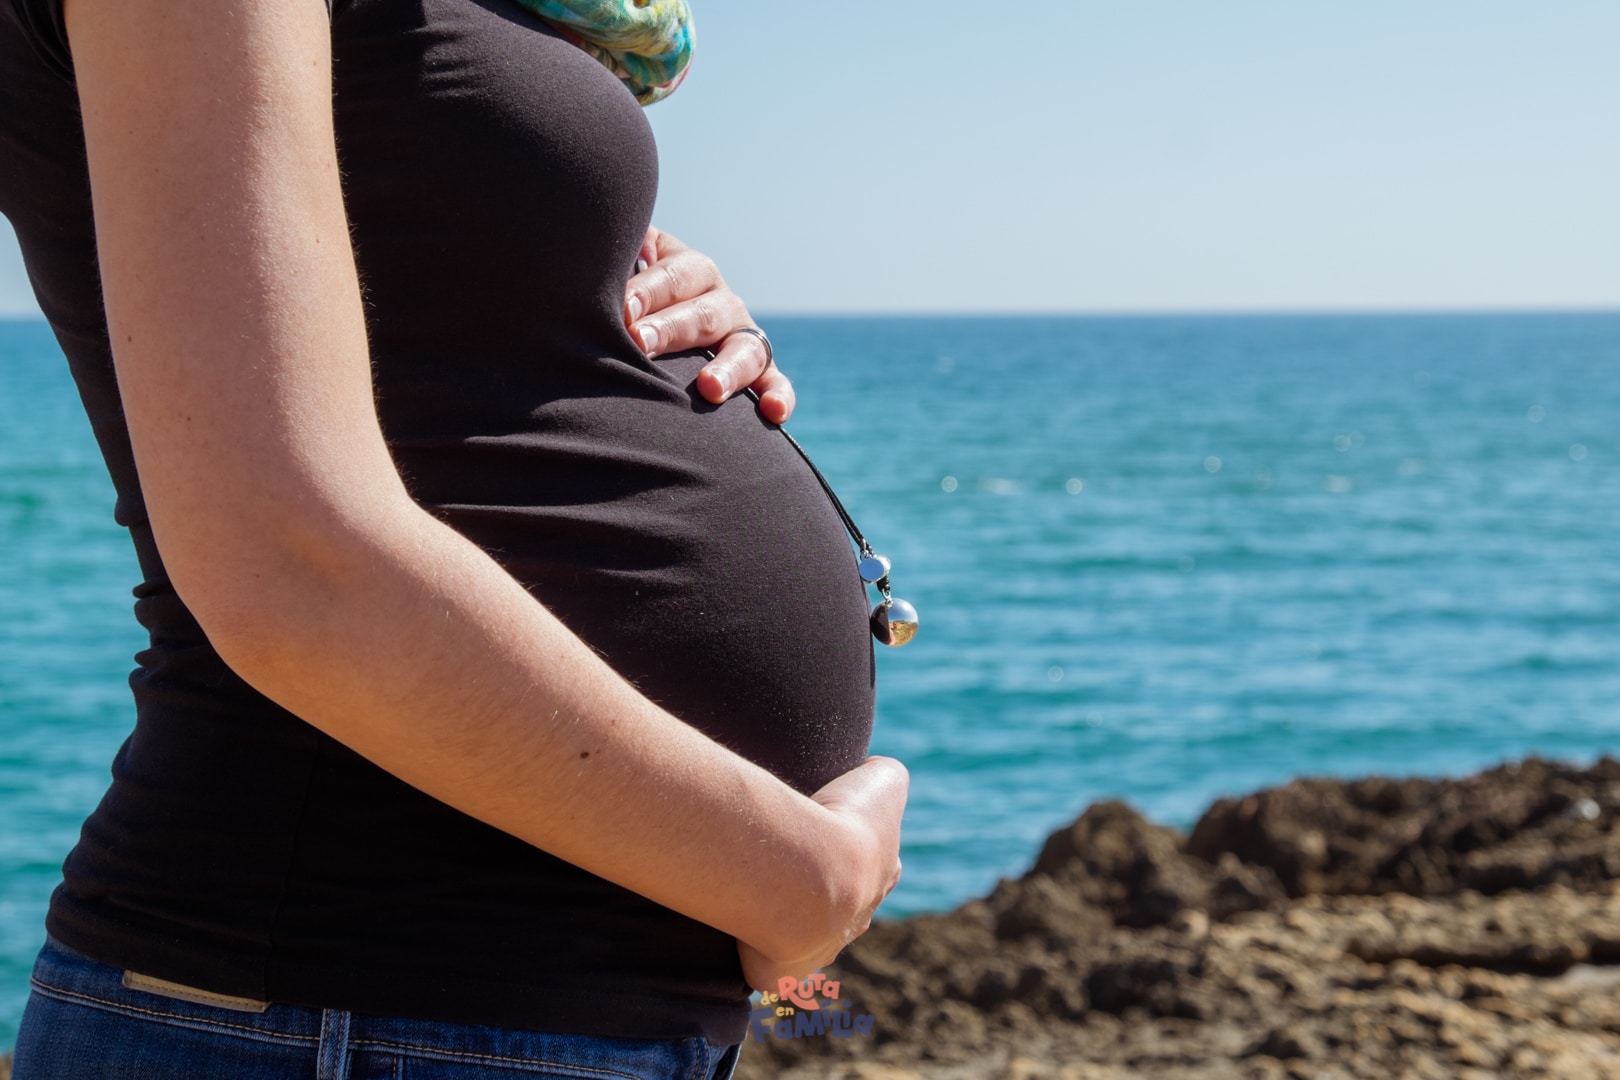 Volar durant l'embaràs. Es pot viatjar embarassada?